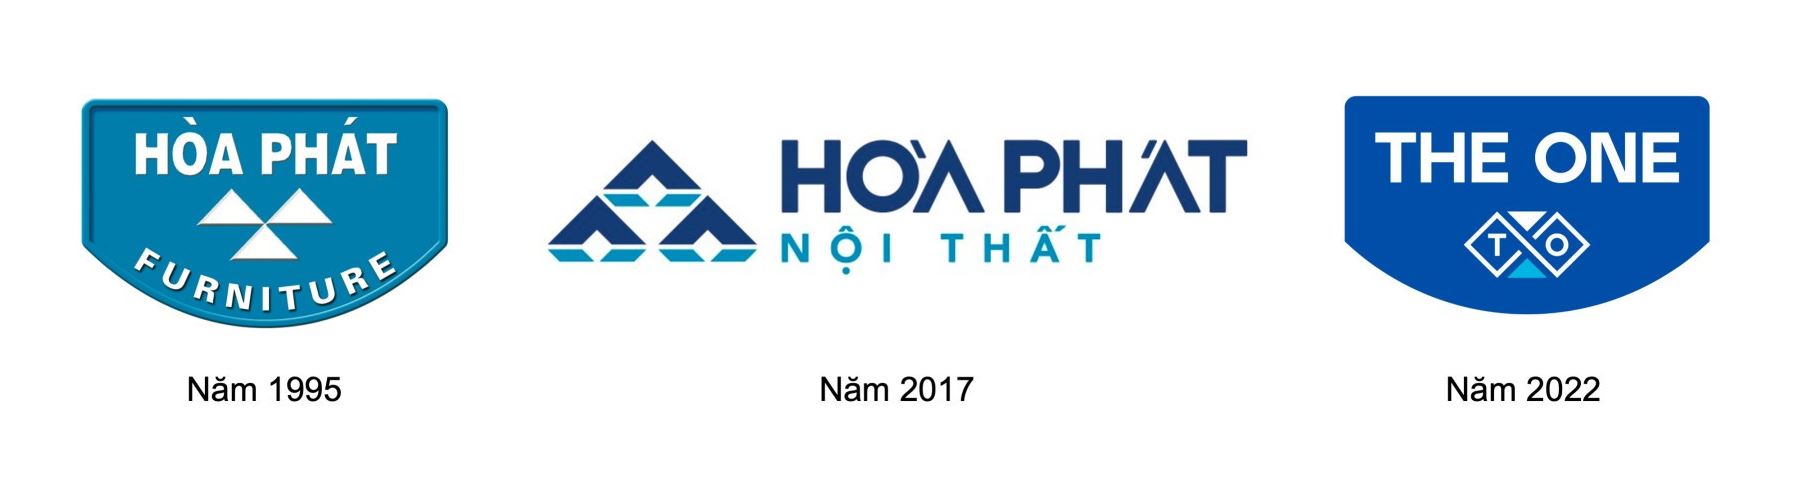 logo nội thất the one mới được chuyển đổi từ Hòa Phát